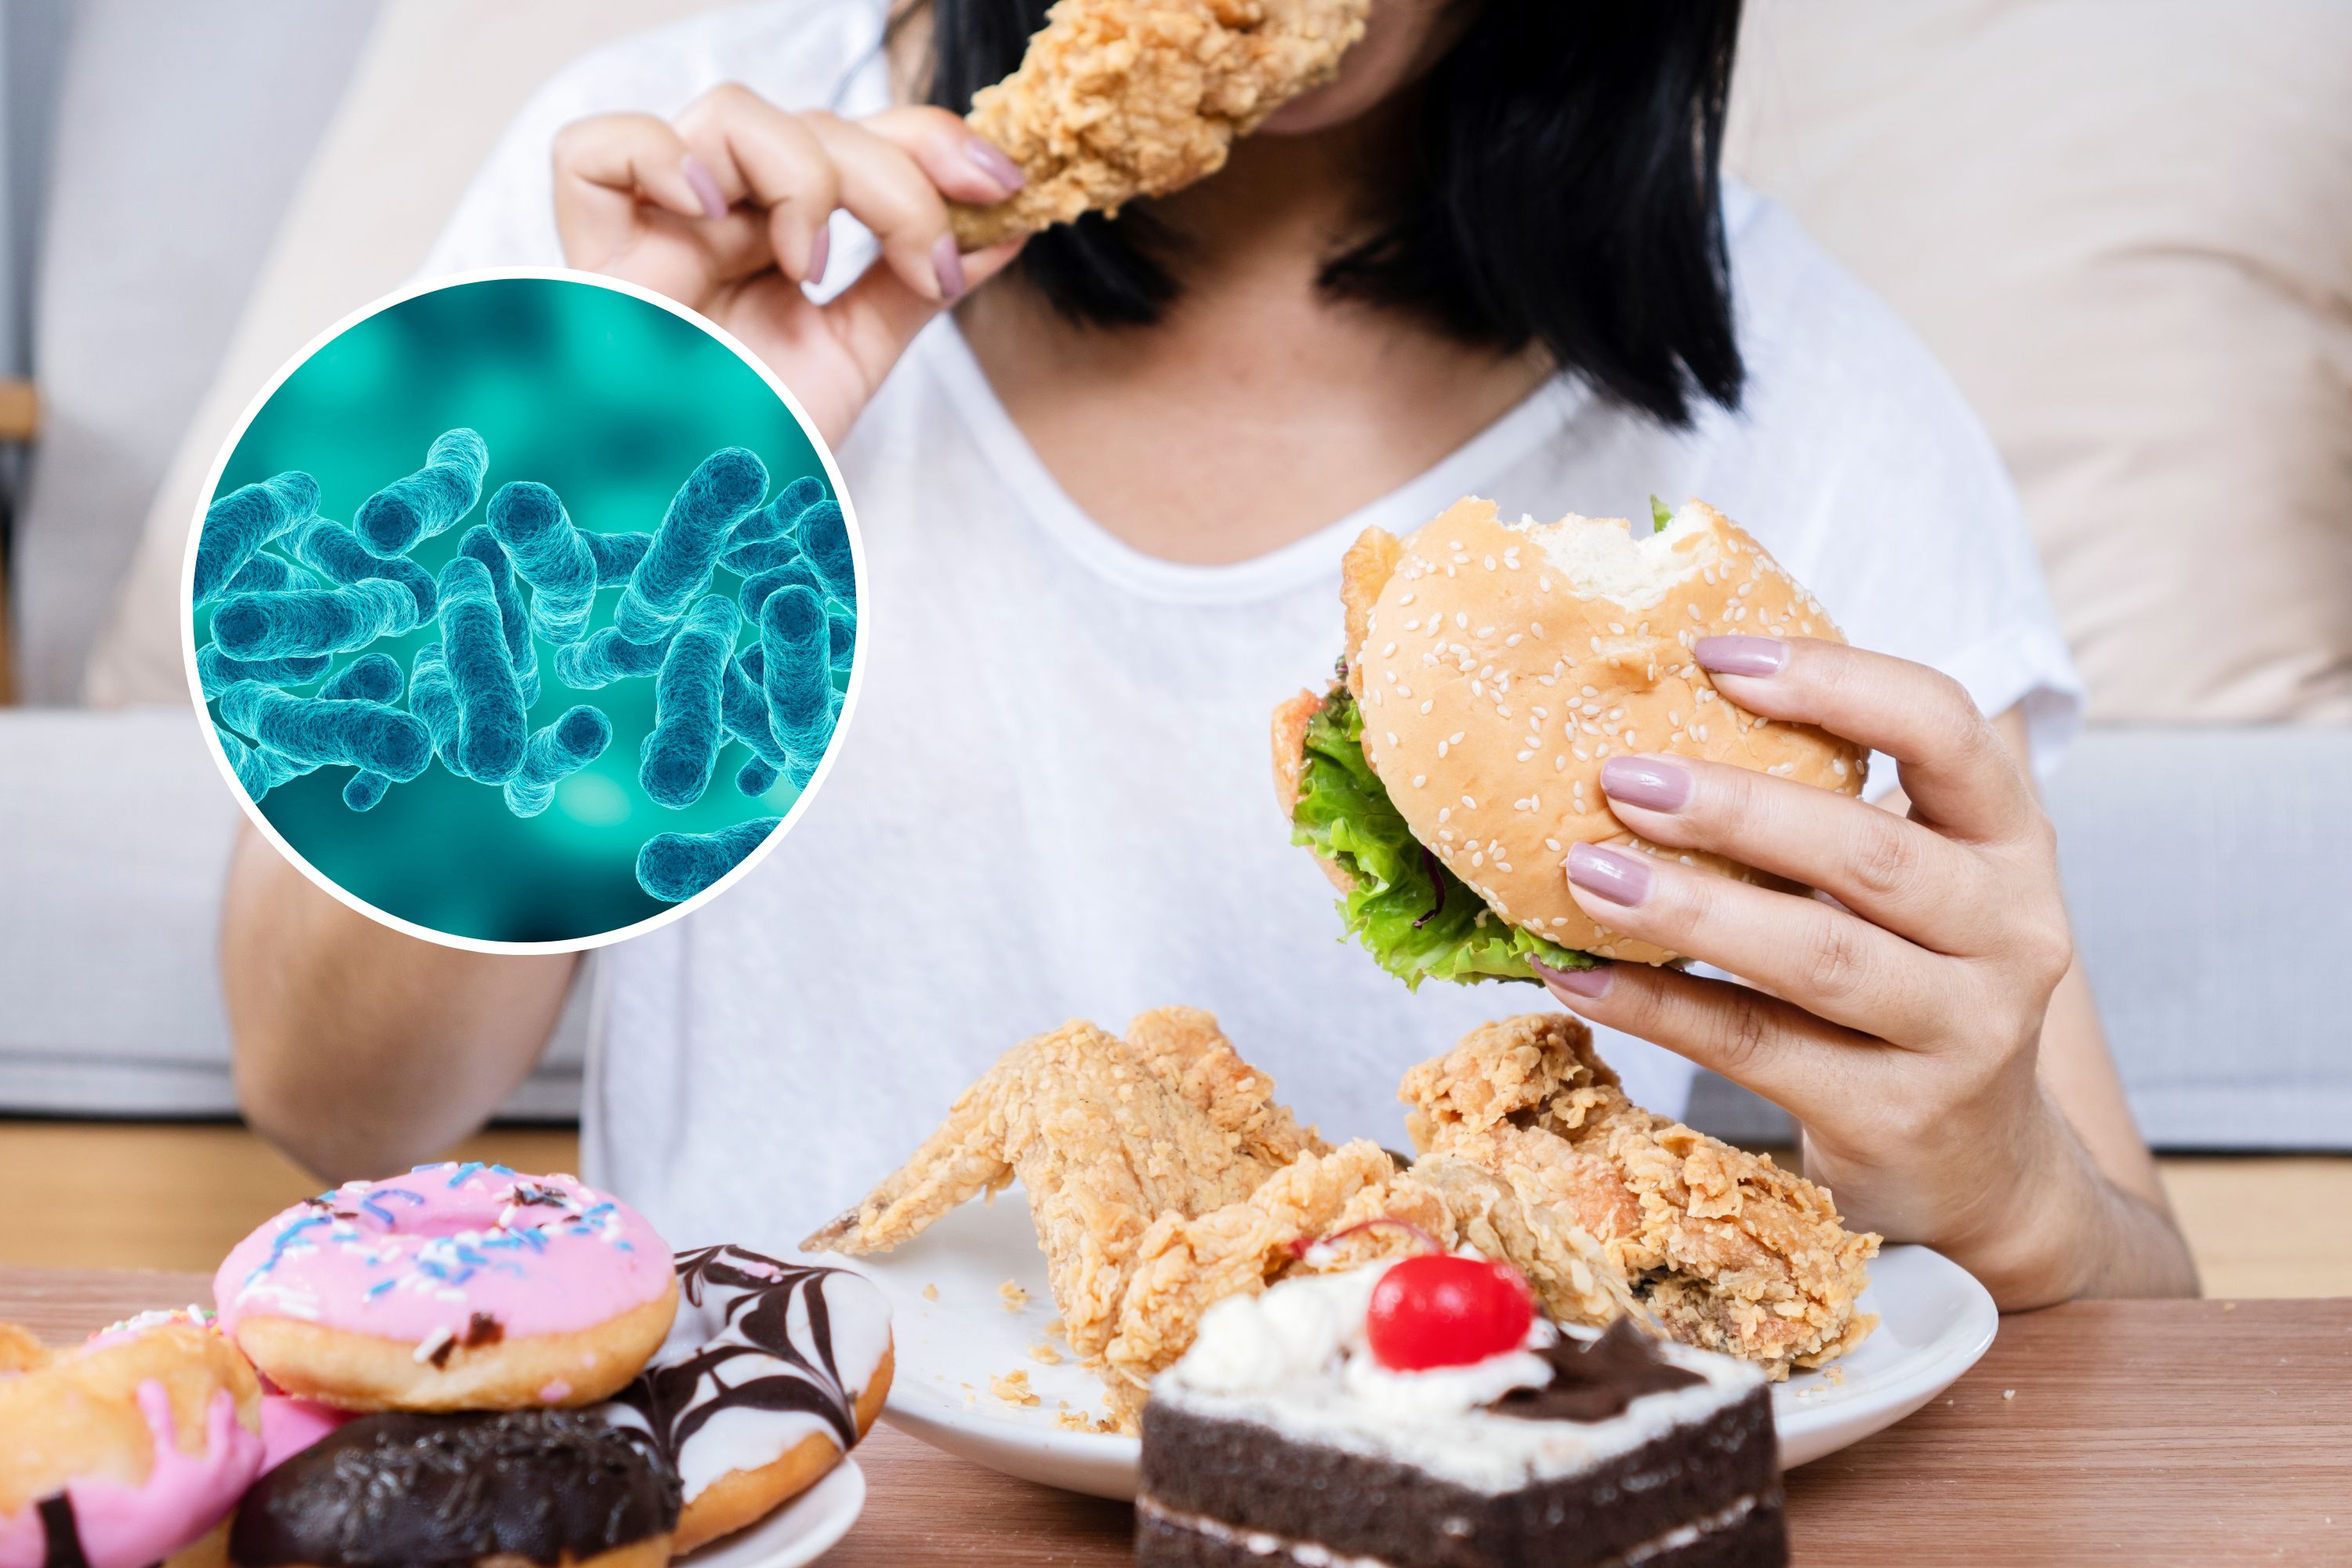 Des scientifiques identifient des bactéries intestinales liées à une alimentation compulsive